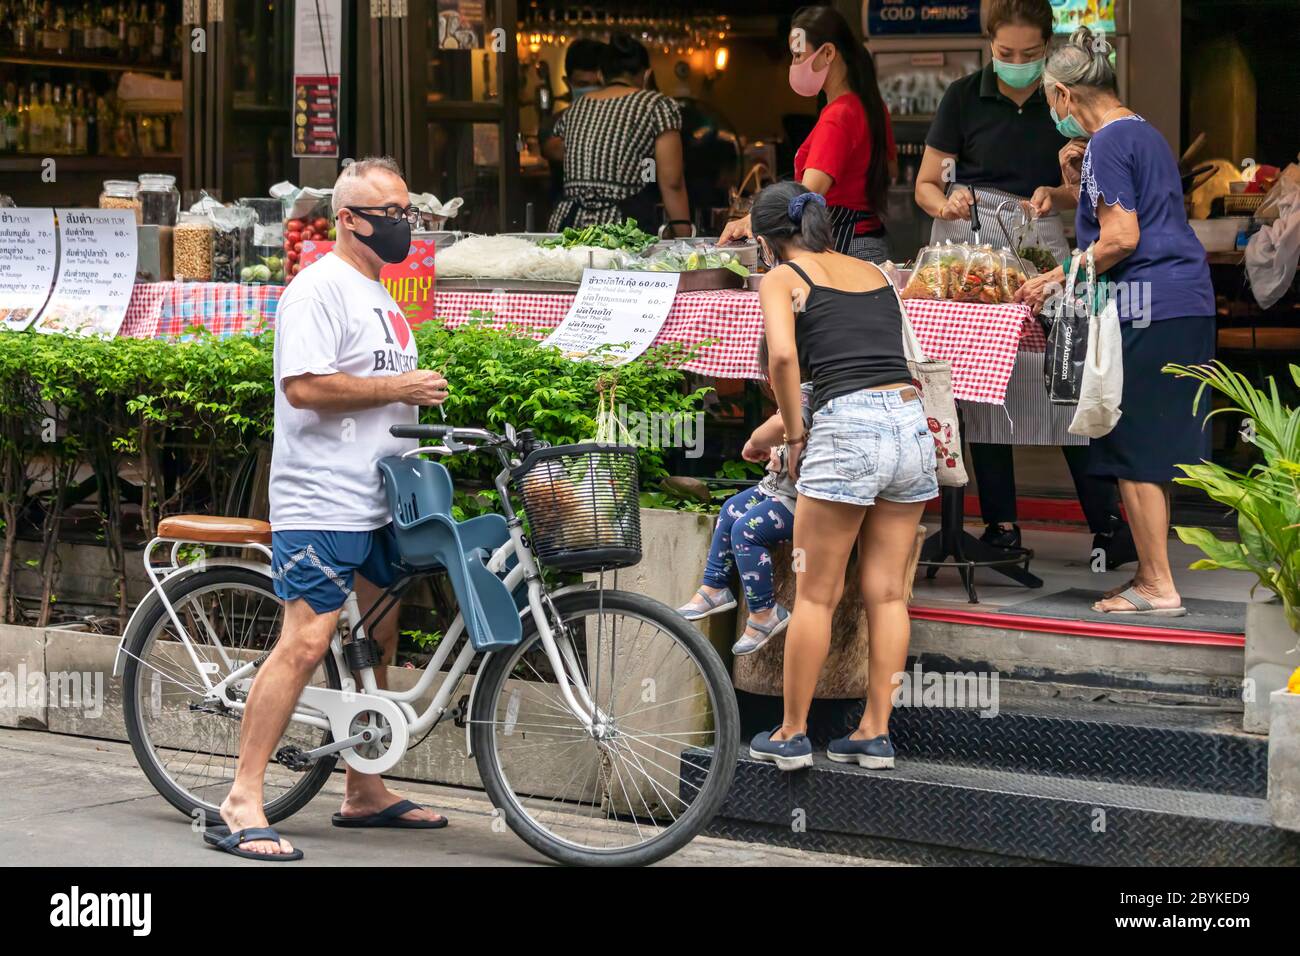 Famiglia con maschera e bicicletta al Take away food stalls durante la pandemia di Covid, Bangkok, Thailandia Foto Stock